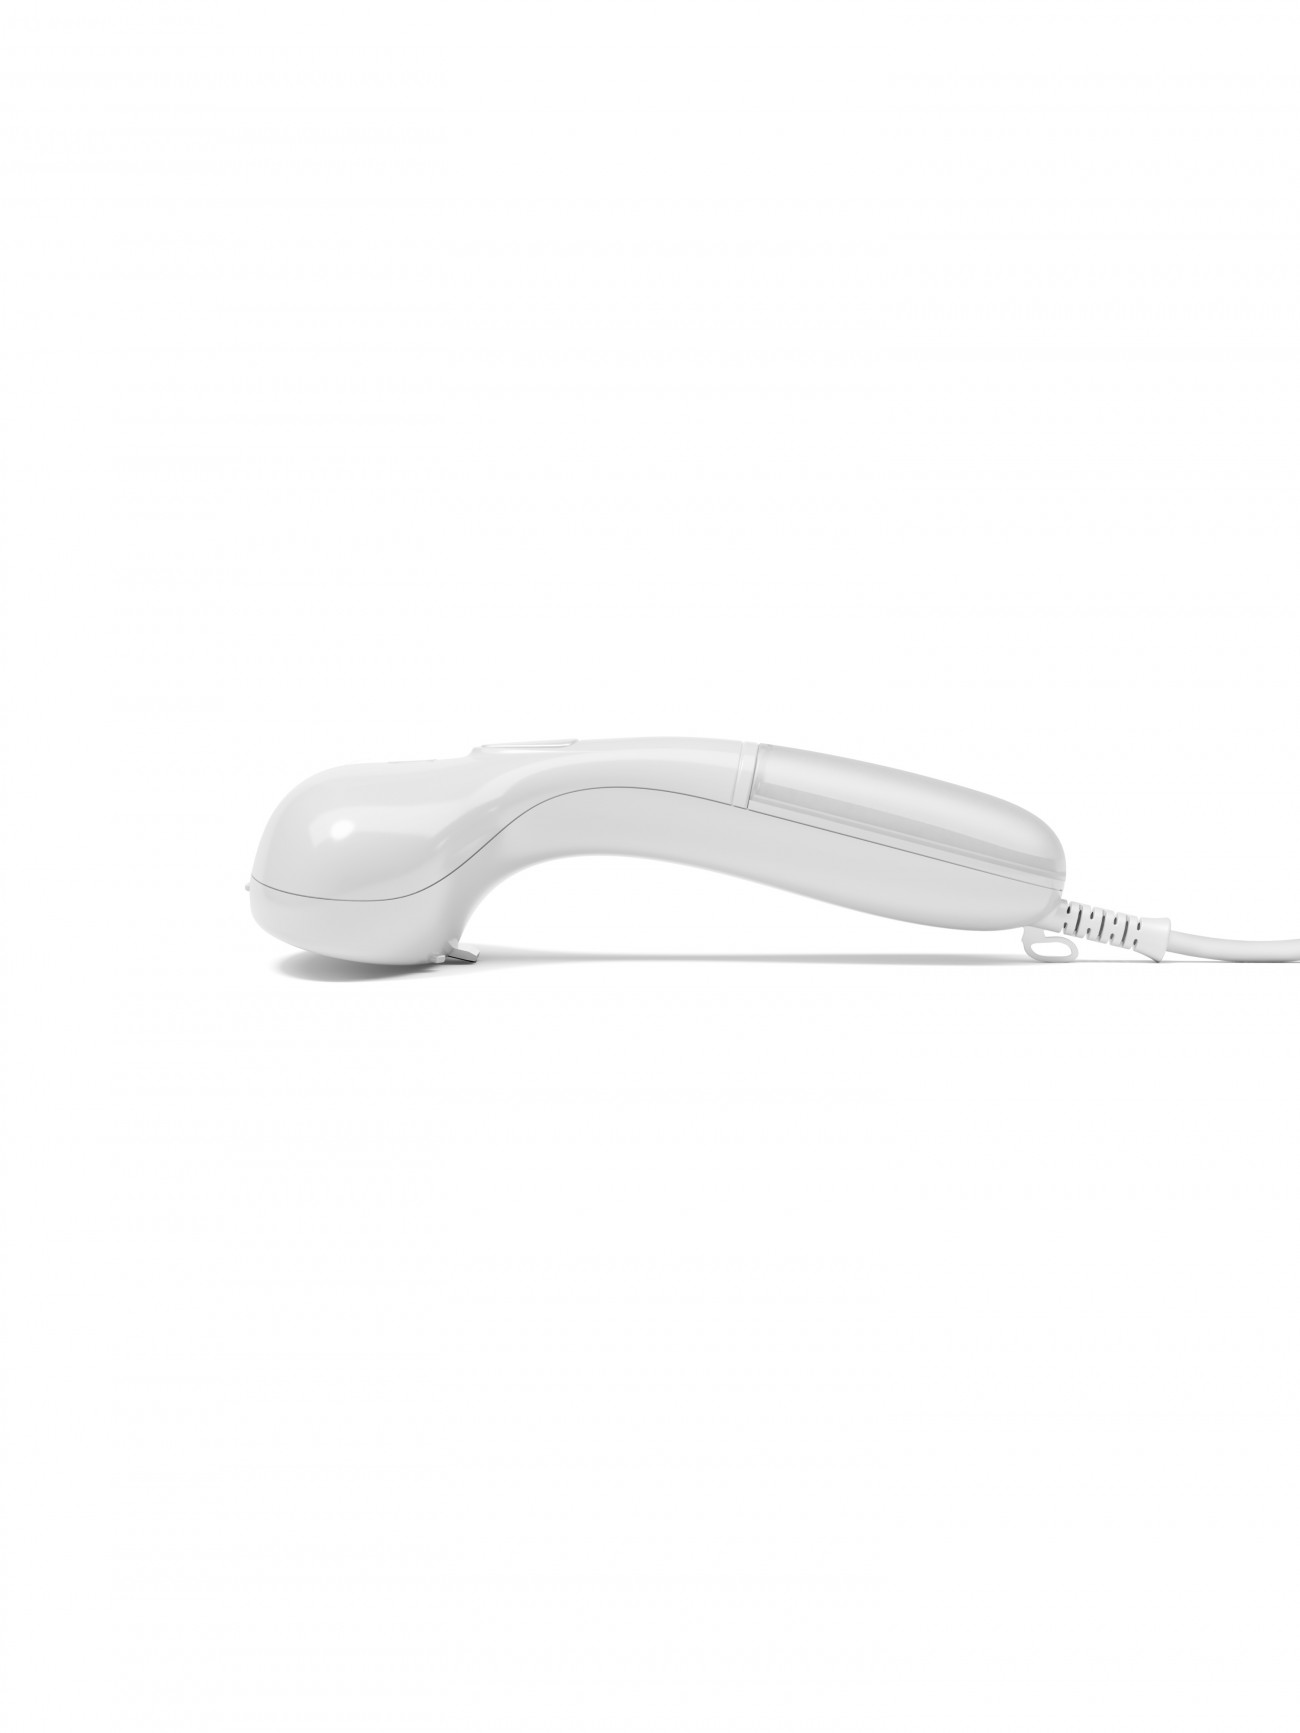 Cirrus No.1 White – Handheld Steamer